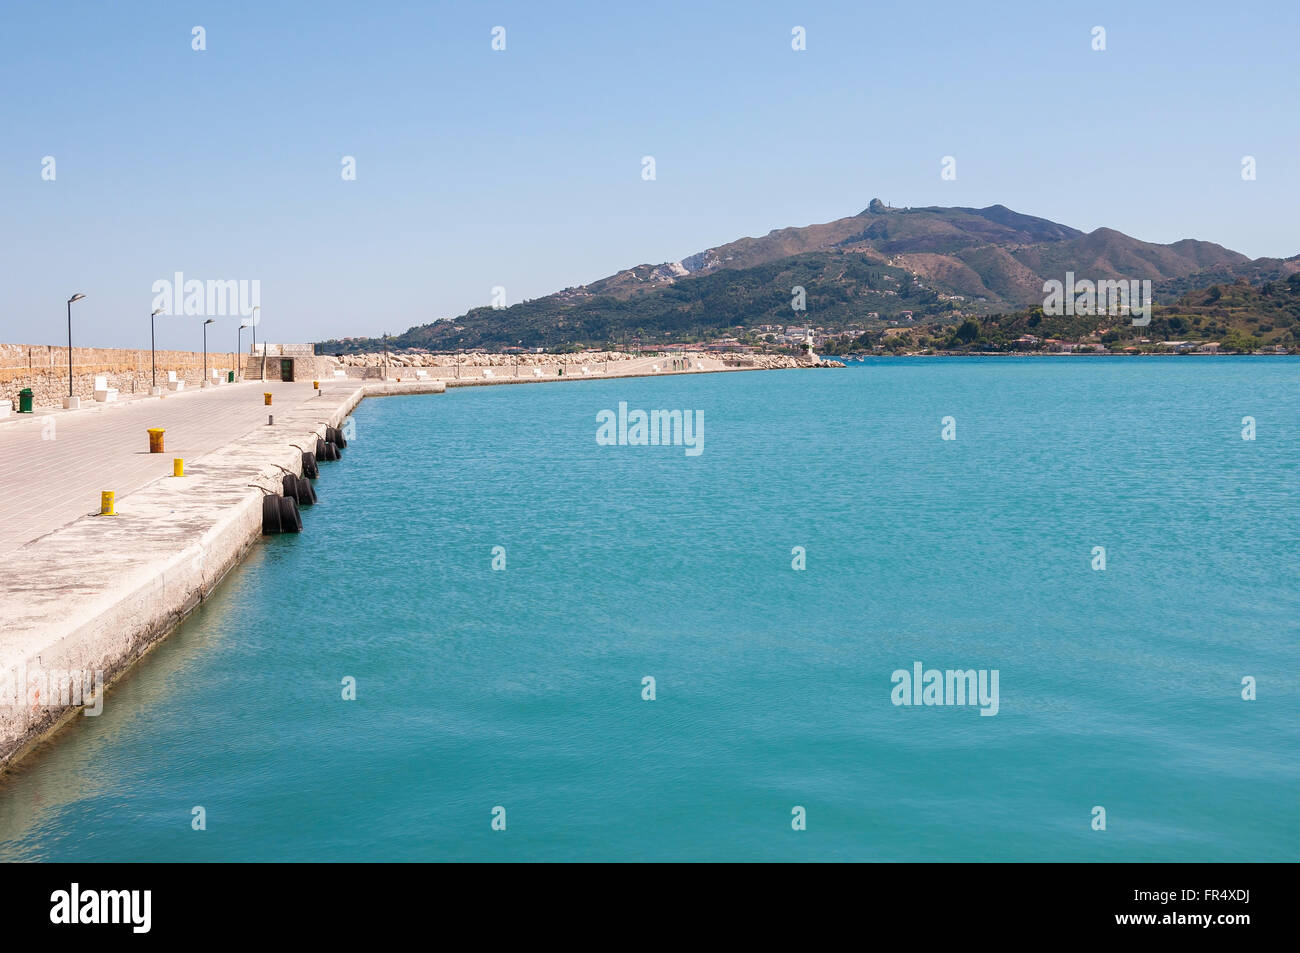 Empty port in Zante town, capital city of Zakynthos, Greece Stock Photo